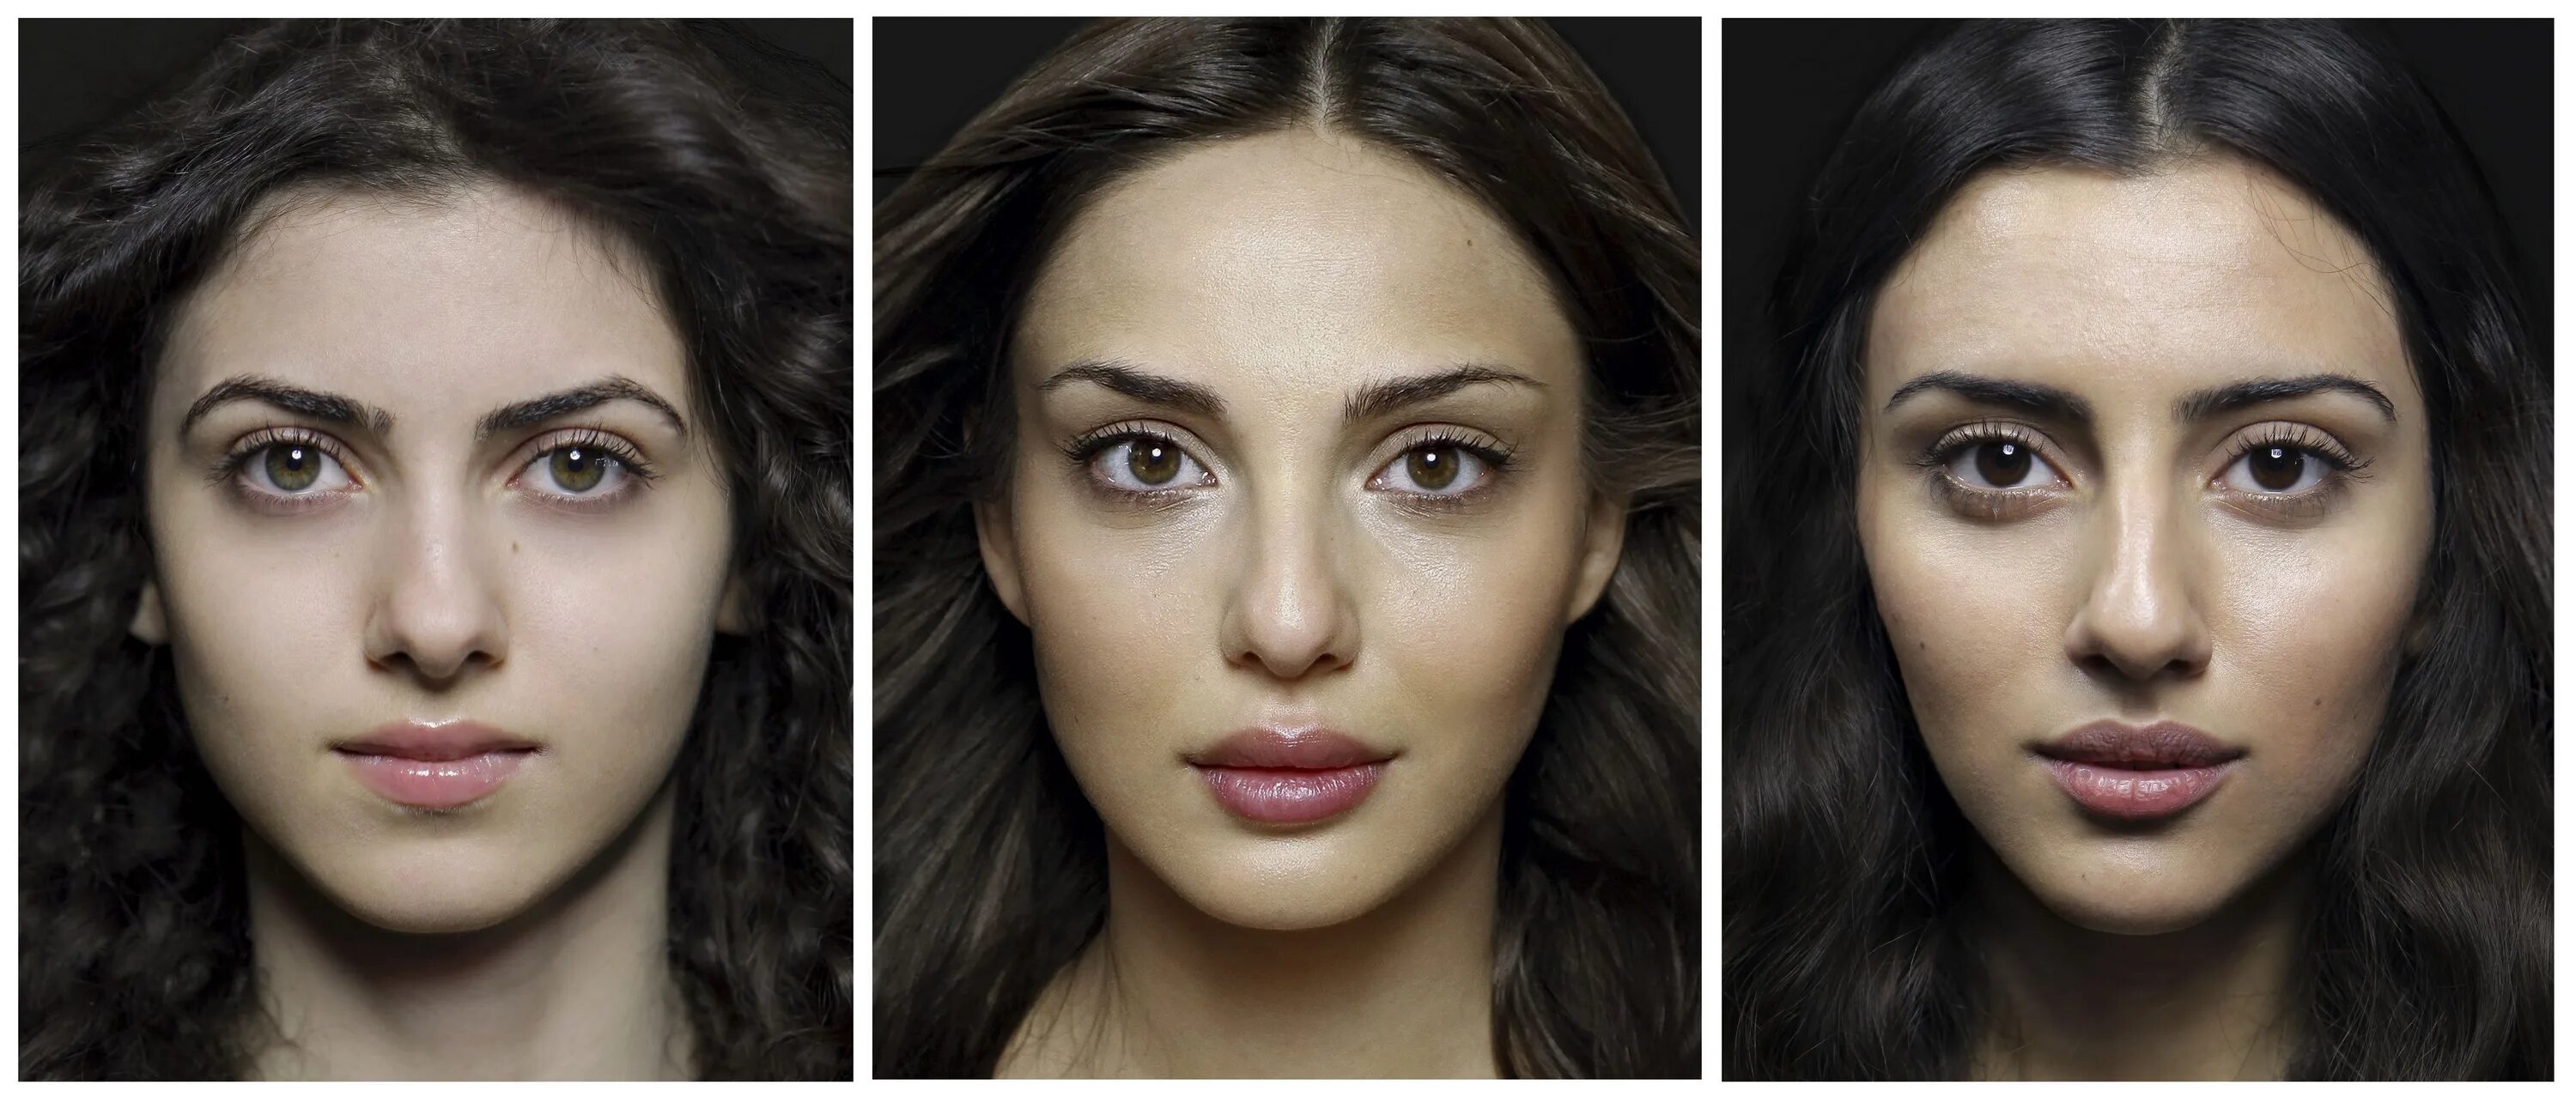 Внешность самое главное. Национальные Истоки красоты армянка. Внешность девушек разных национальностей. Усредненный портрет. Разные лица женщин.